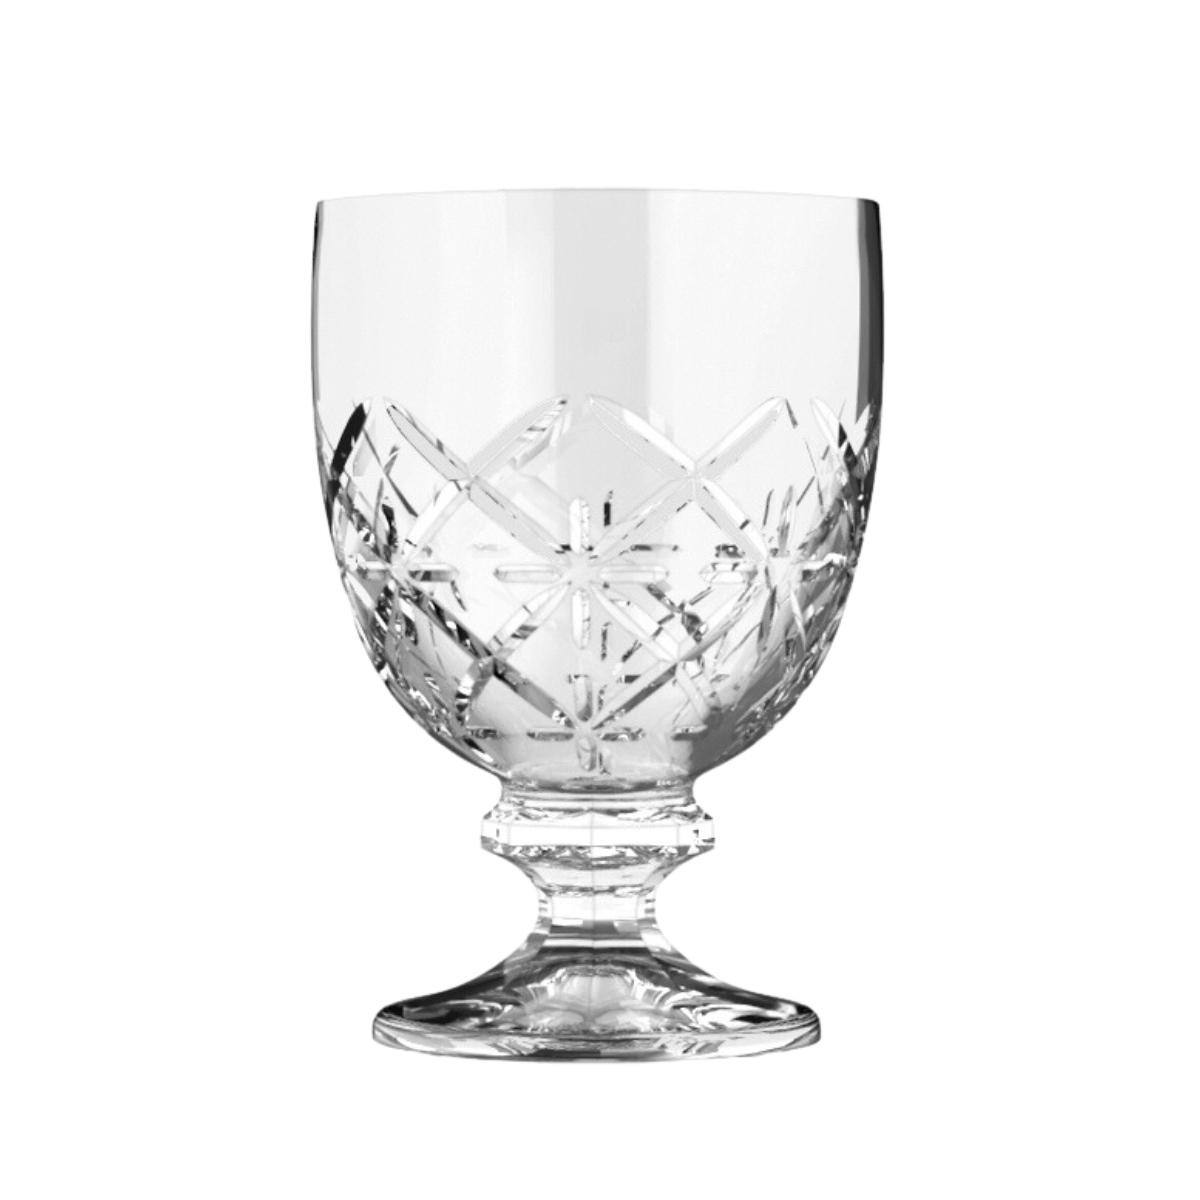 طقم كسات عصير شفاف مصري سيتي كلاس لوسيان City glass Lausanne Stemware 220 ml set of 6 pieces